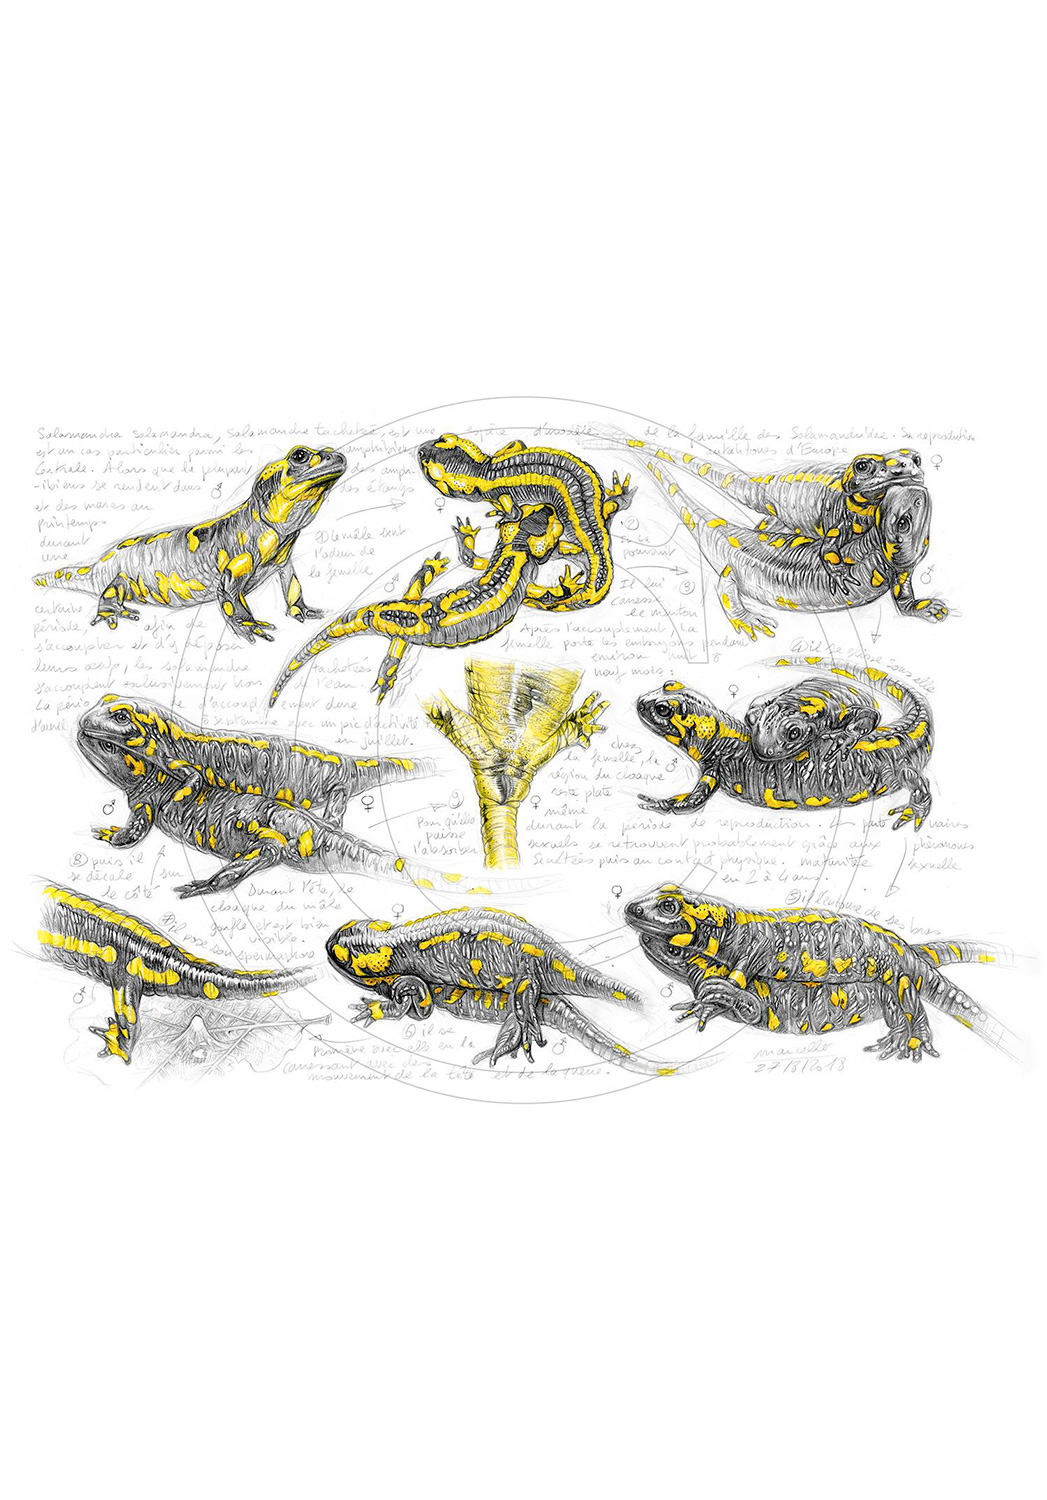 Marcello-art: Wish Card 384 - Salamander mating